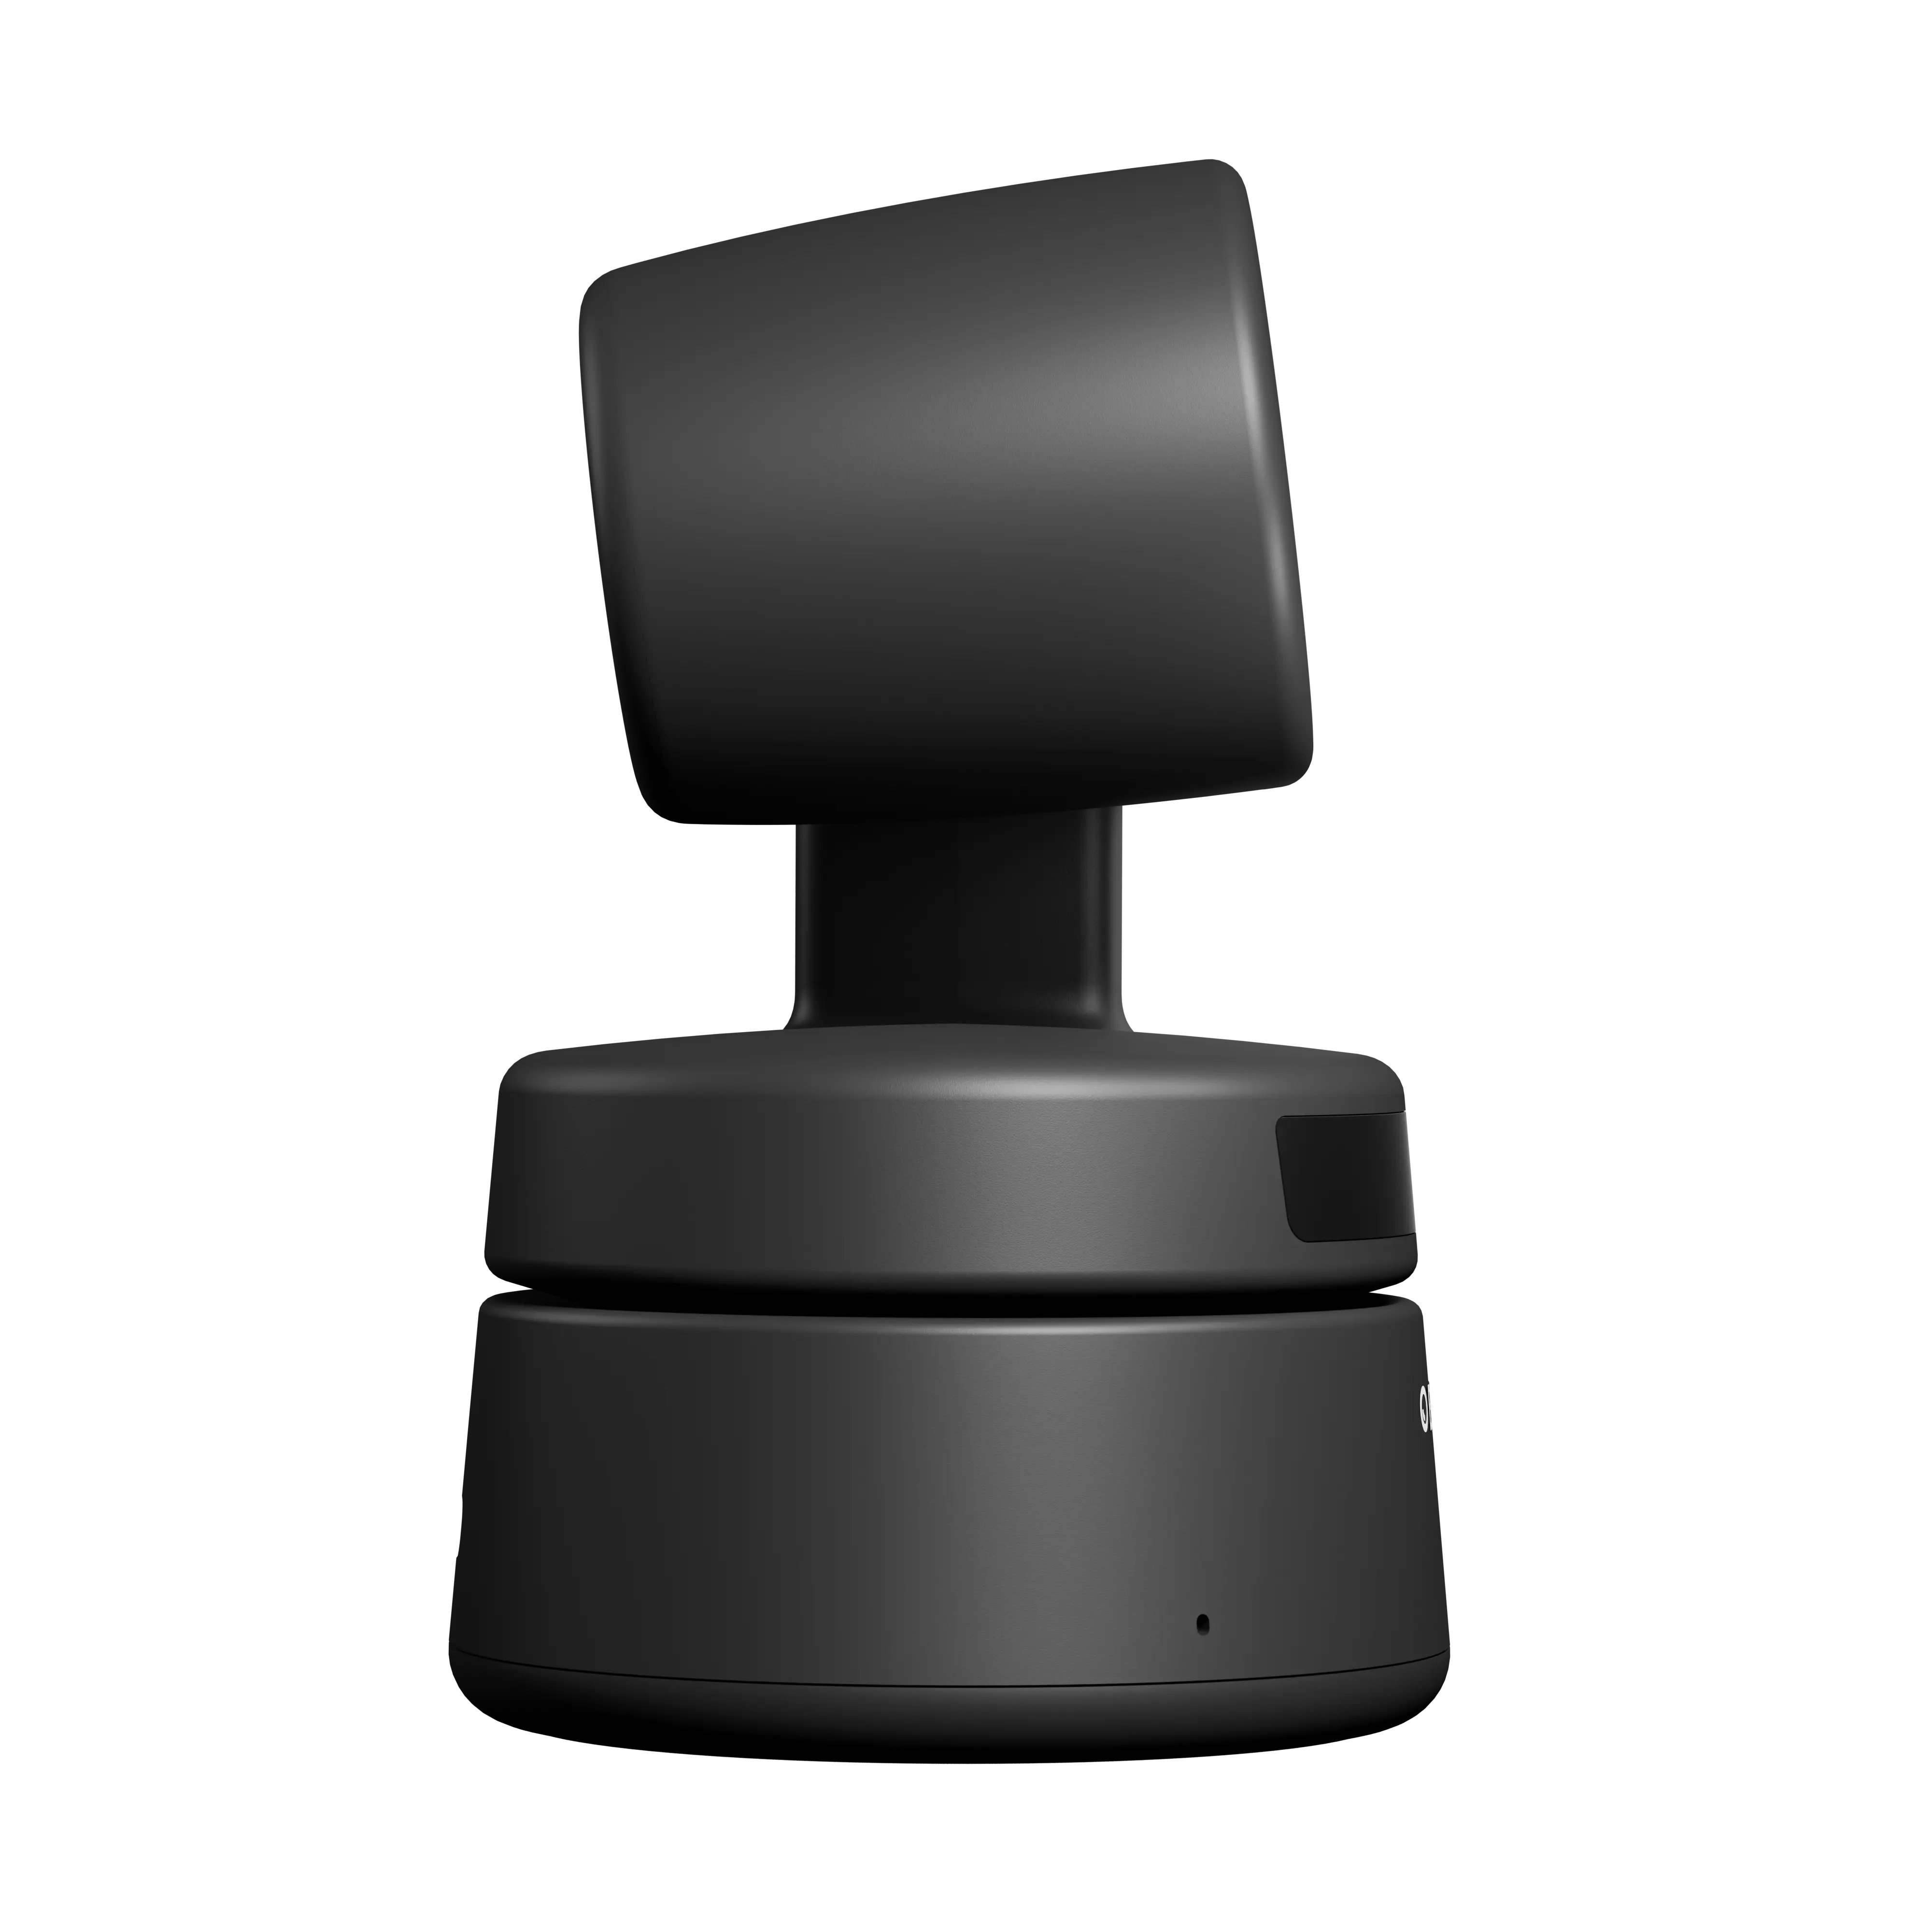 Di alta qualità Obsbot minuscolo 4k Ai motorizzato Ptz Webcam 1080p Full Hd videoconferenza Video Chat Online dal vivo Stremsing